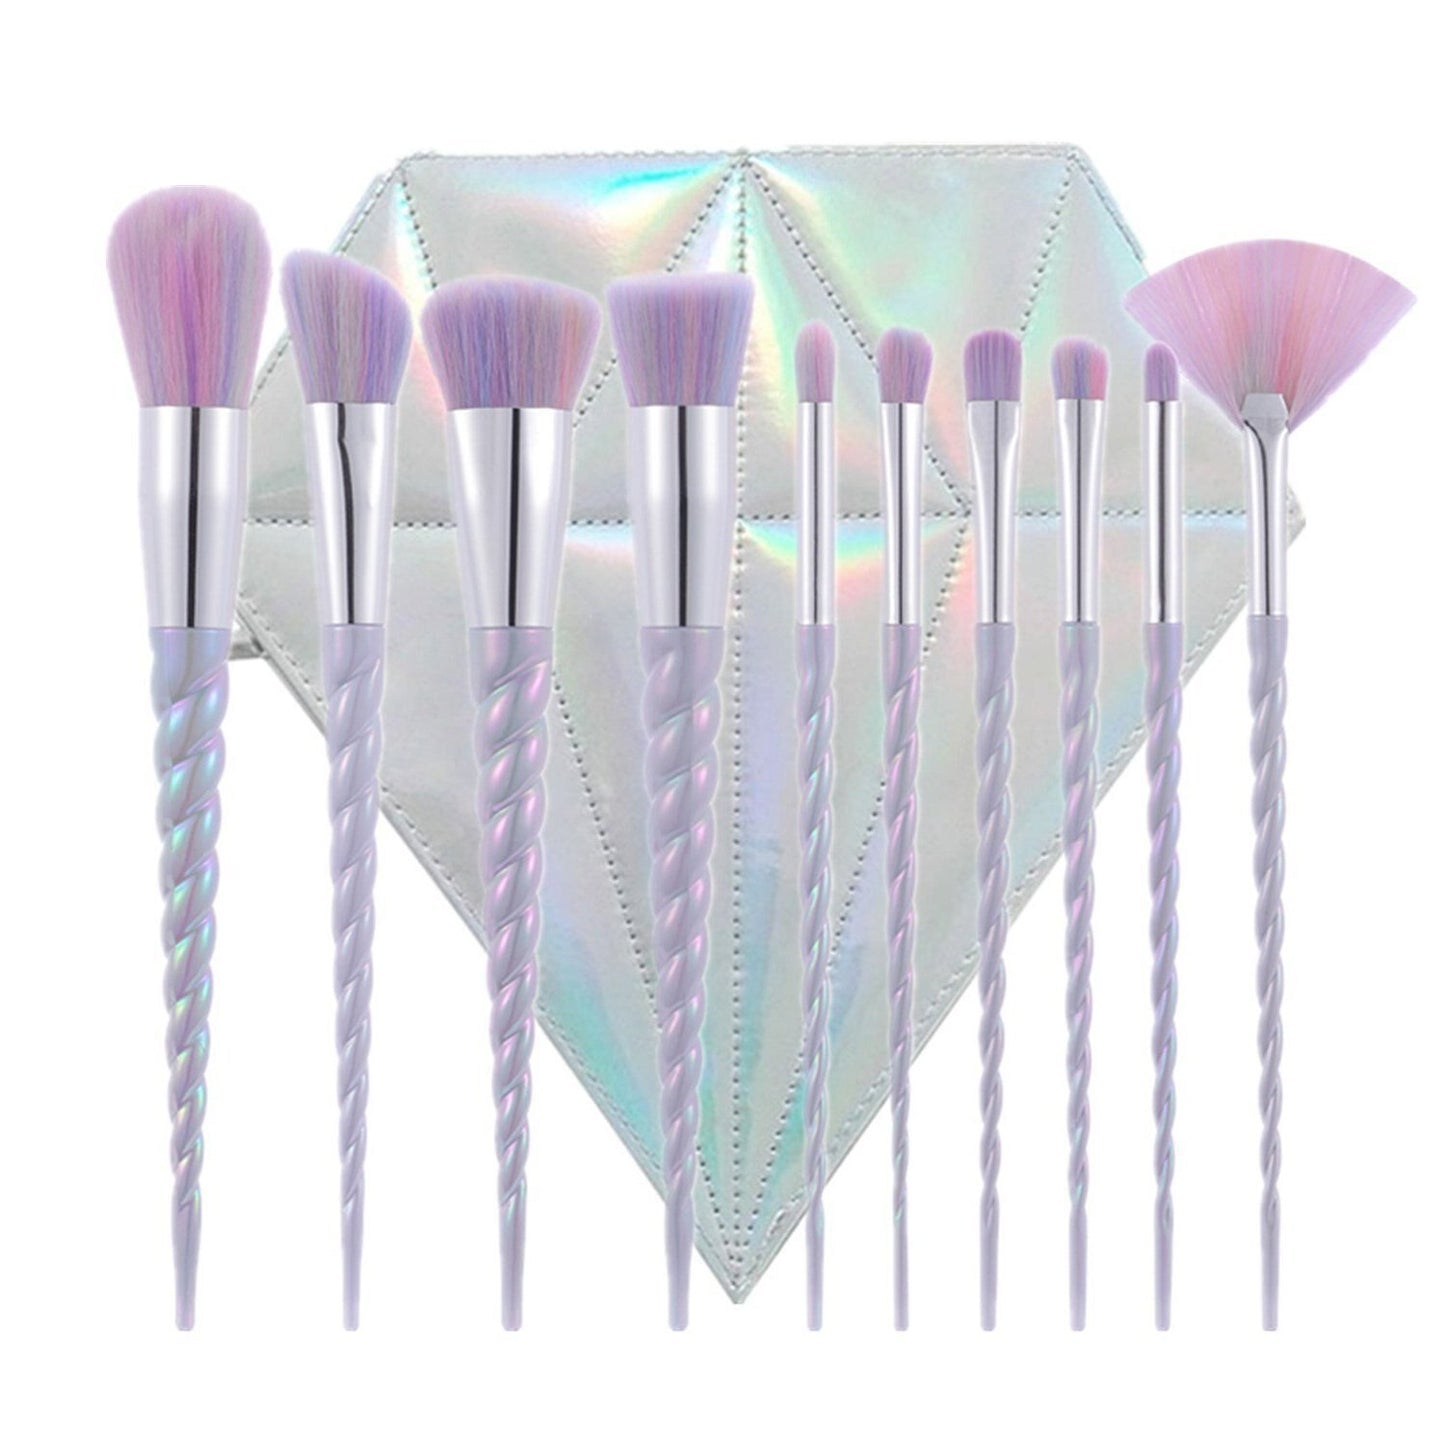 10pcs Unicorn Makeup Brush Set